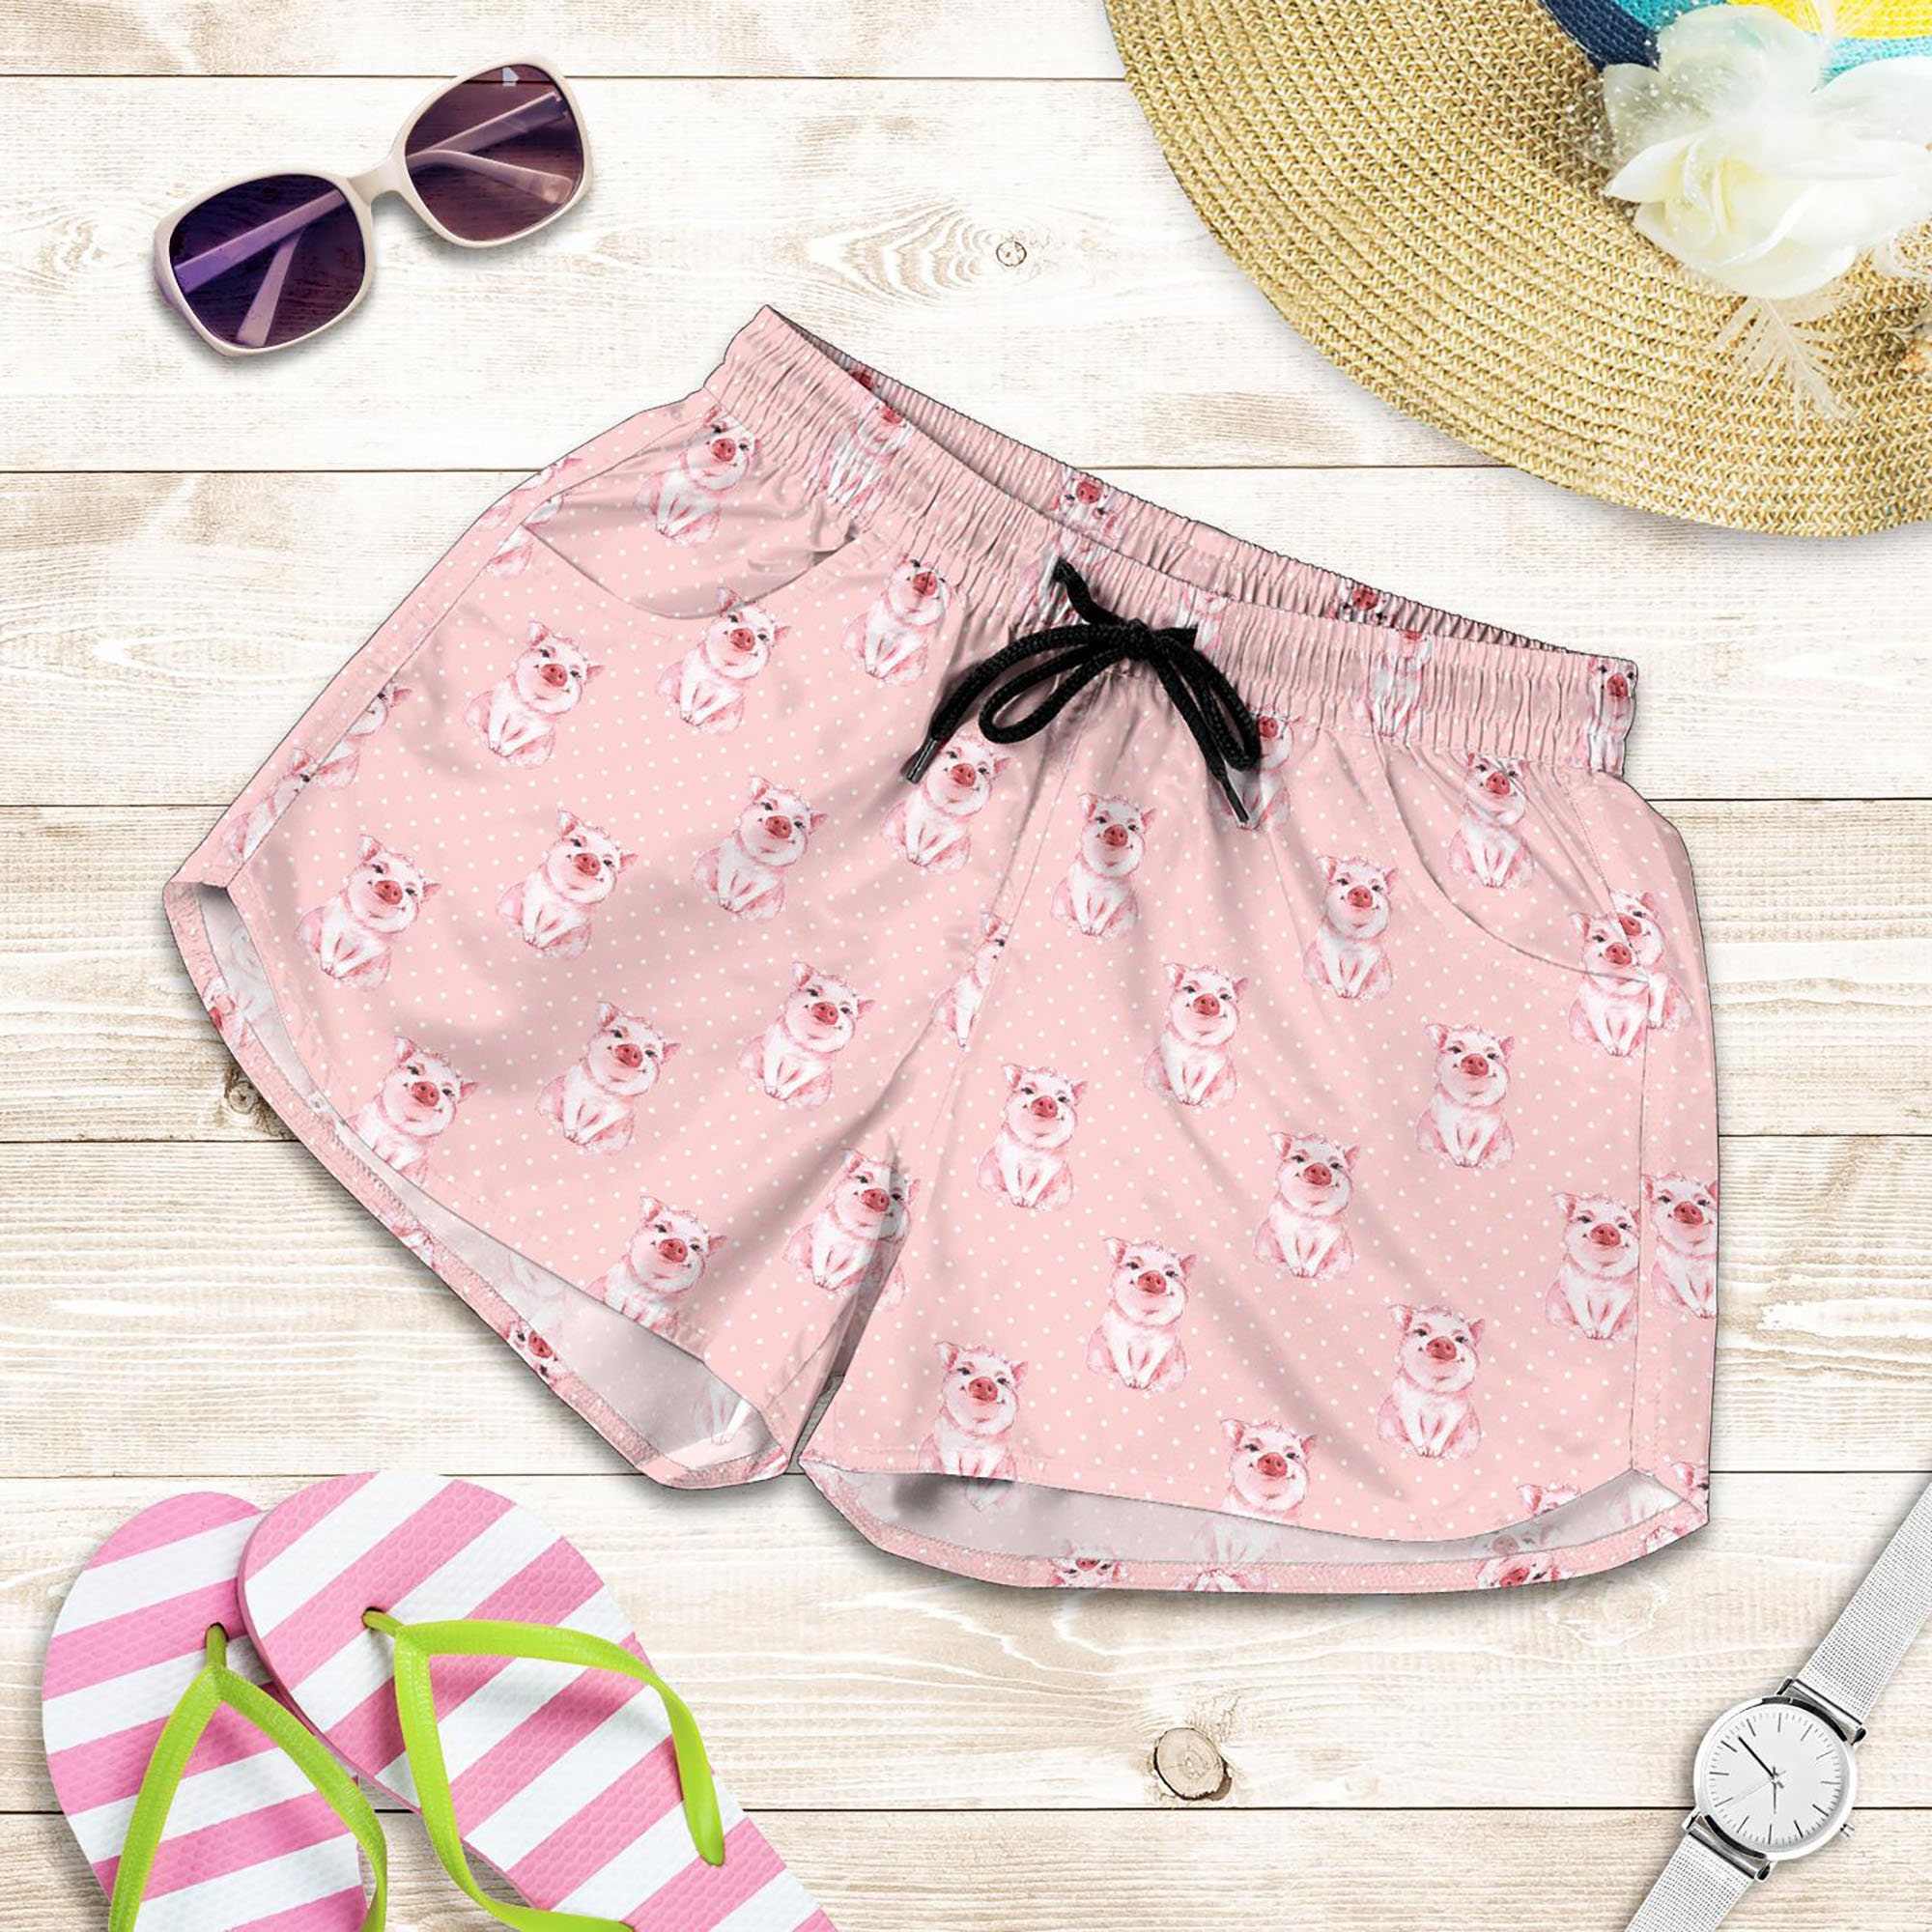 Pig Shorts - Pig Pattern Swim Shorts